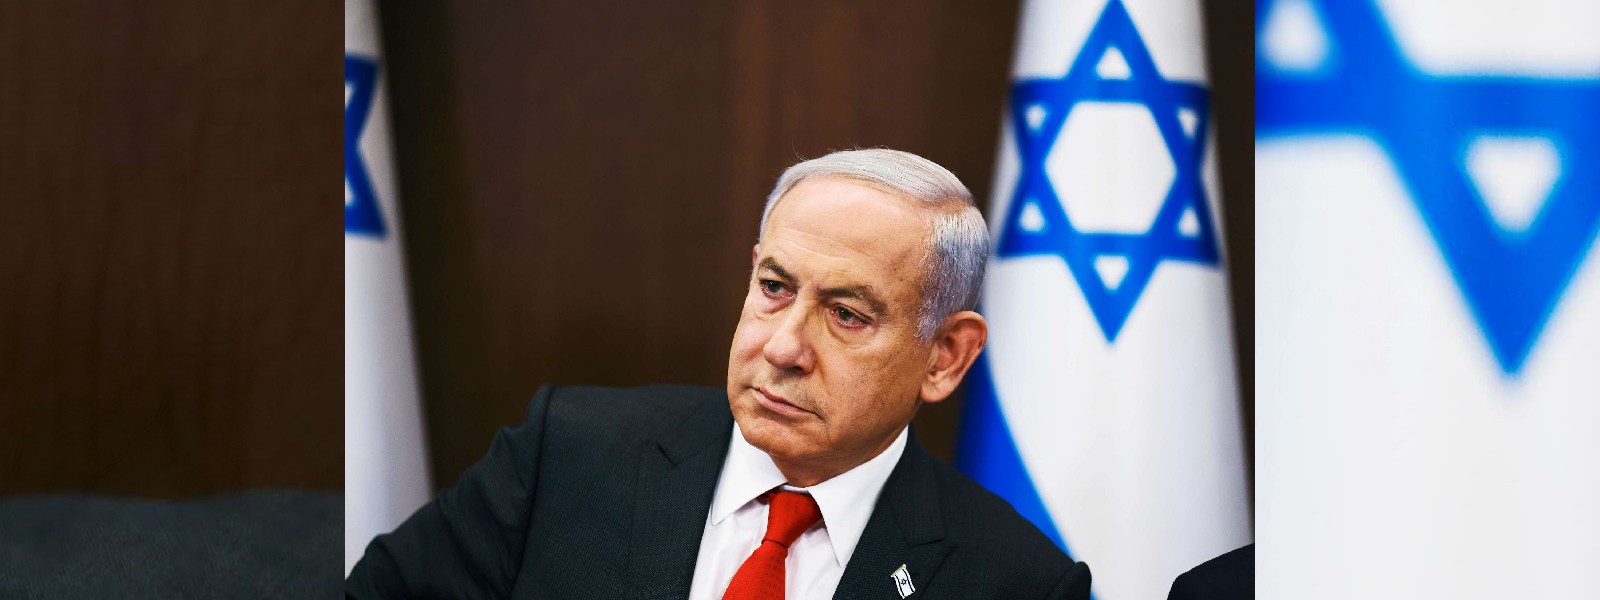 King Bibi: Explaining Netanyahu’s judicial overhaul bill